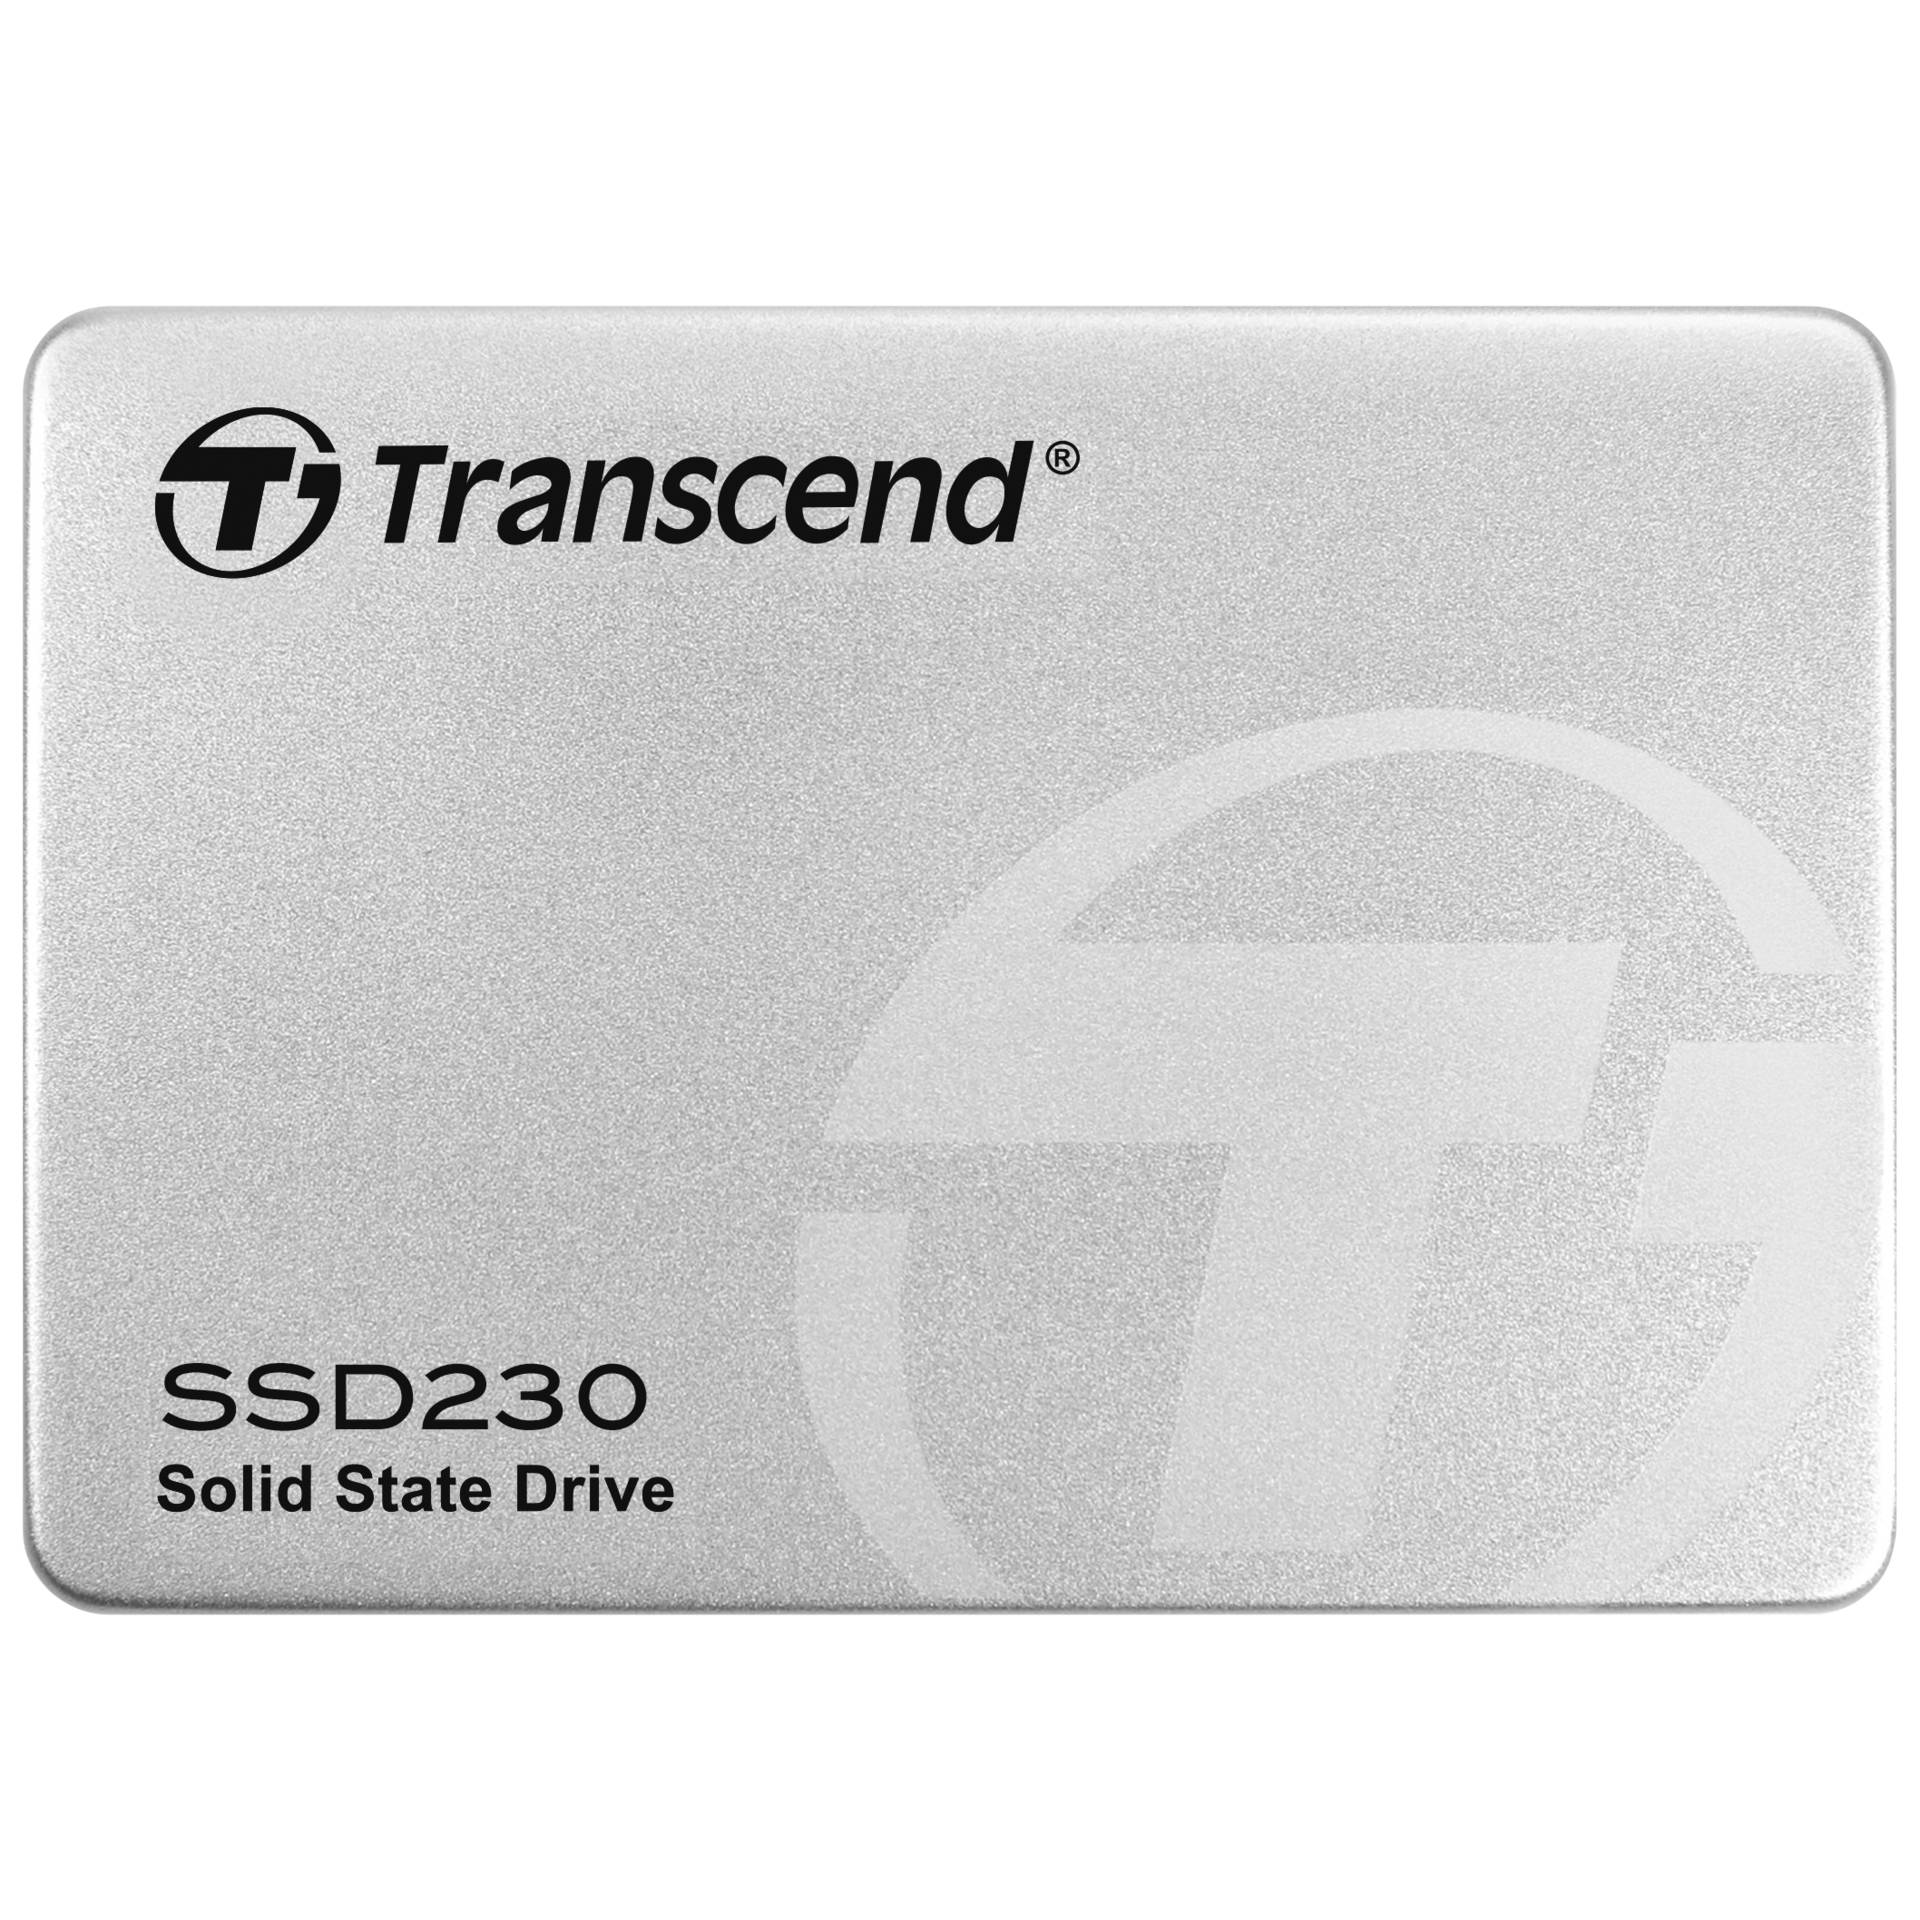 128 GB SSD Transcend SSD230S, SATA 6Gb/s, lesen: 560MB/s, schreiben: 480MB/s, TBW: 70TB